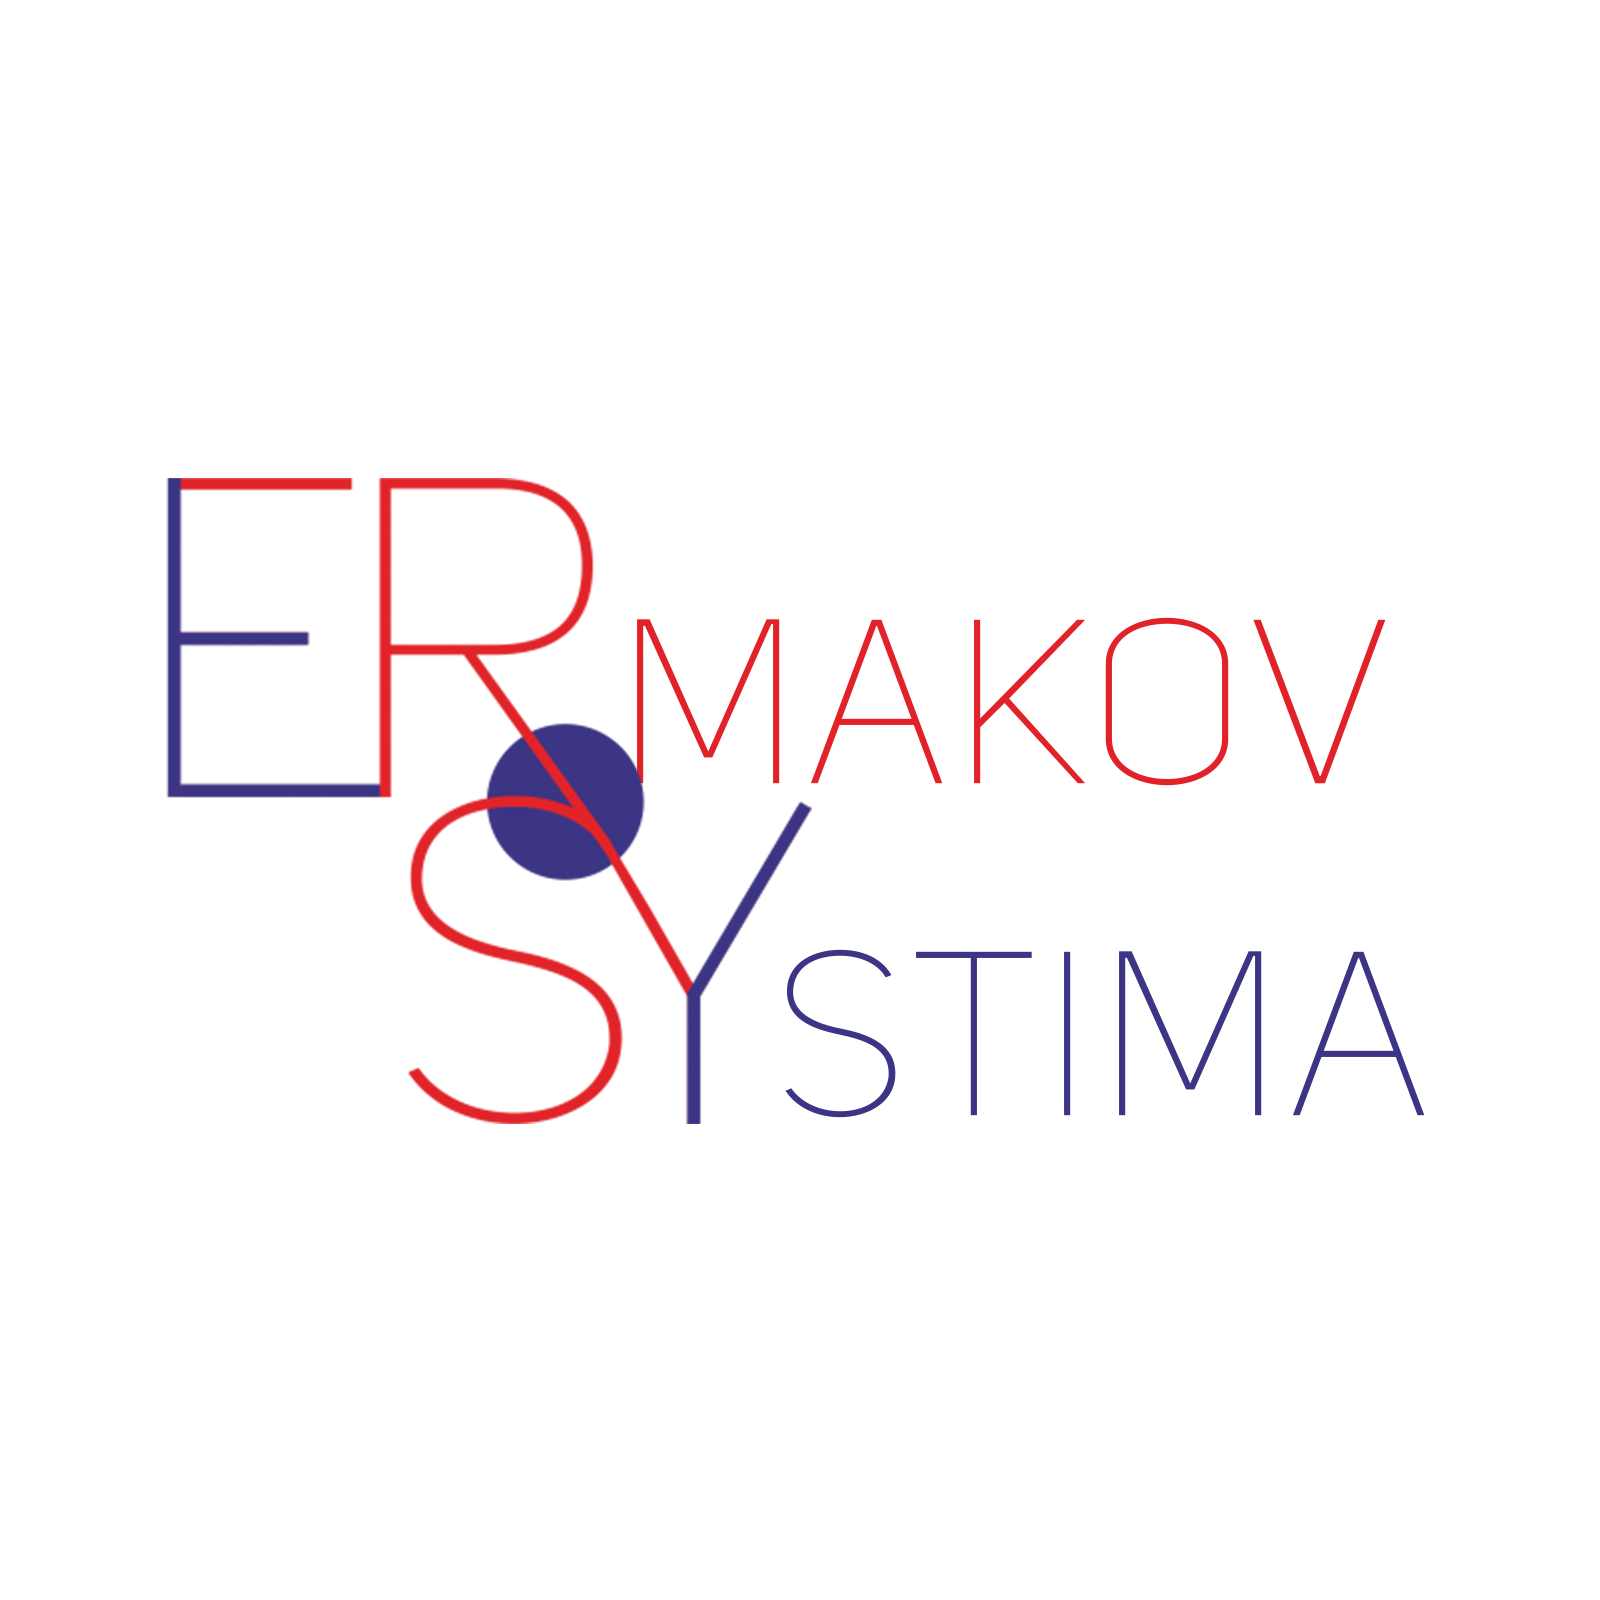 Ermakov Systima